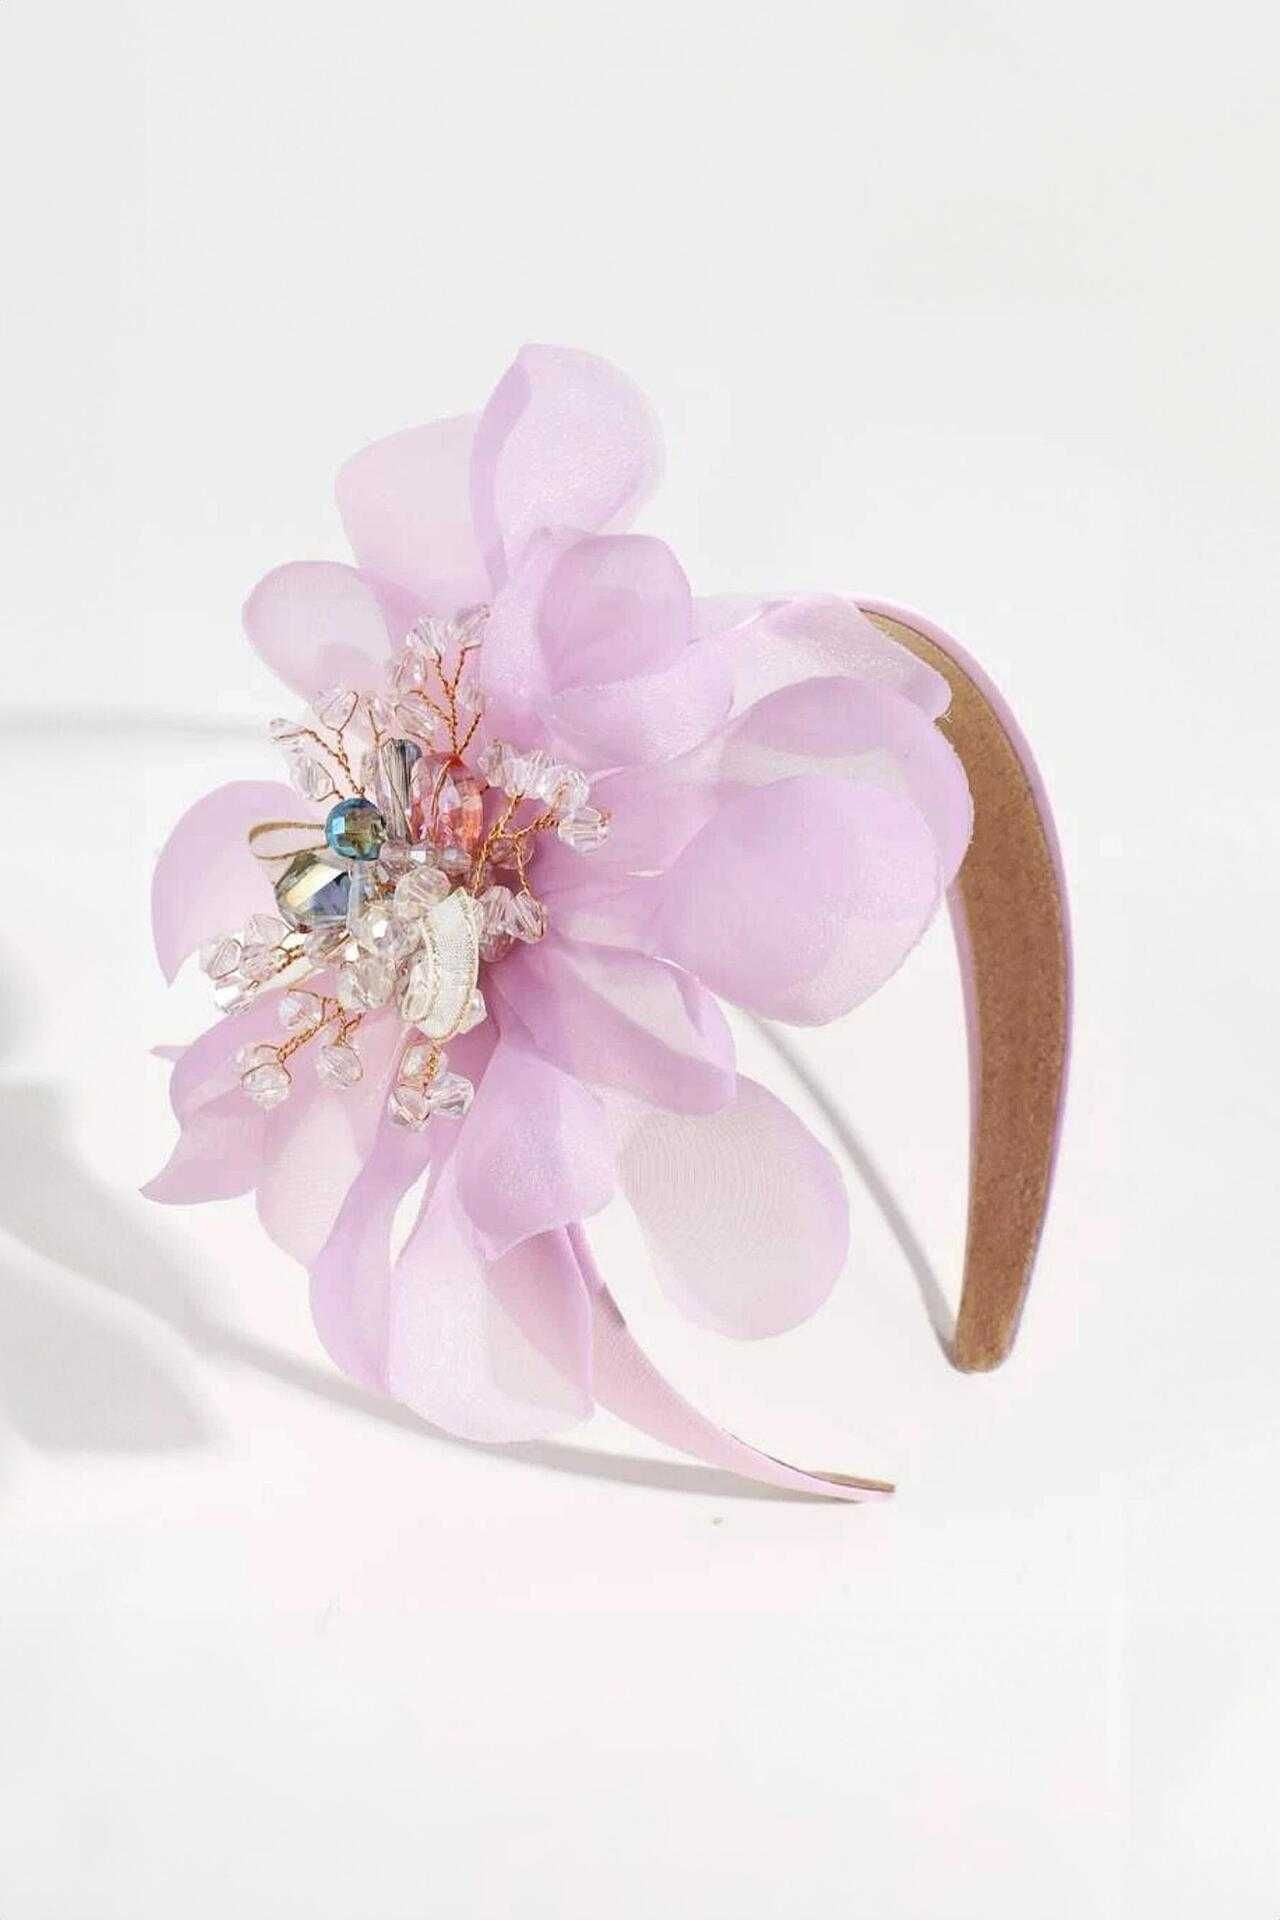 Диадема с голямо цвете в лилаво или цвят по избор, Petite Fleur